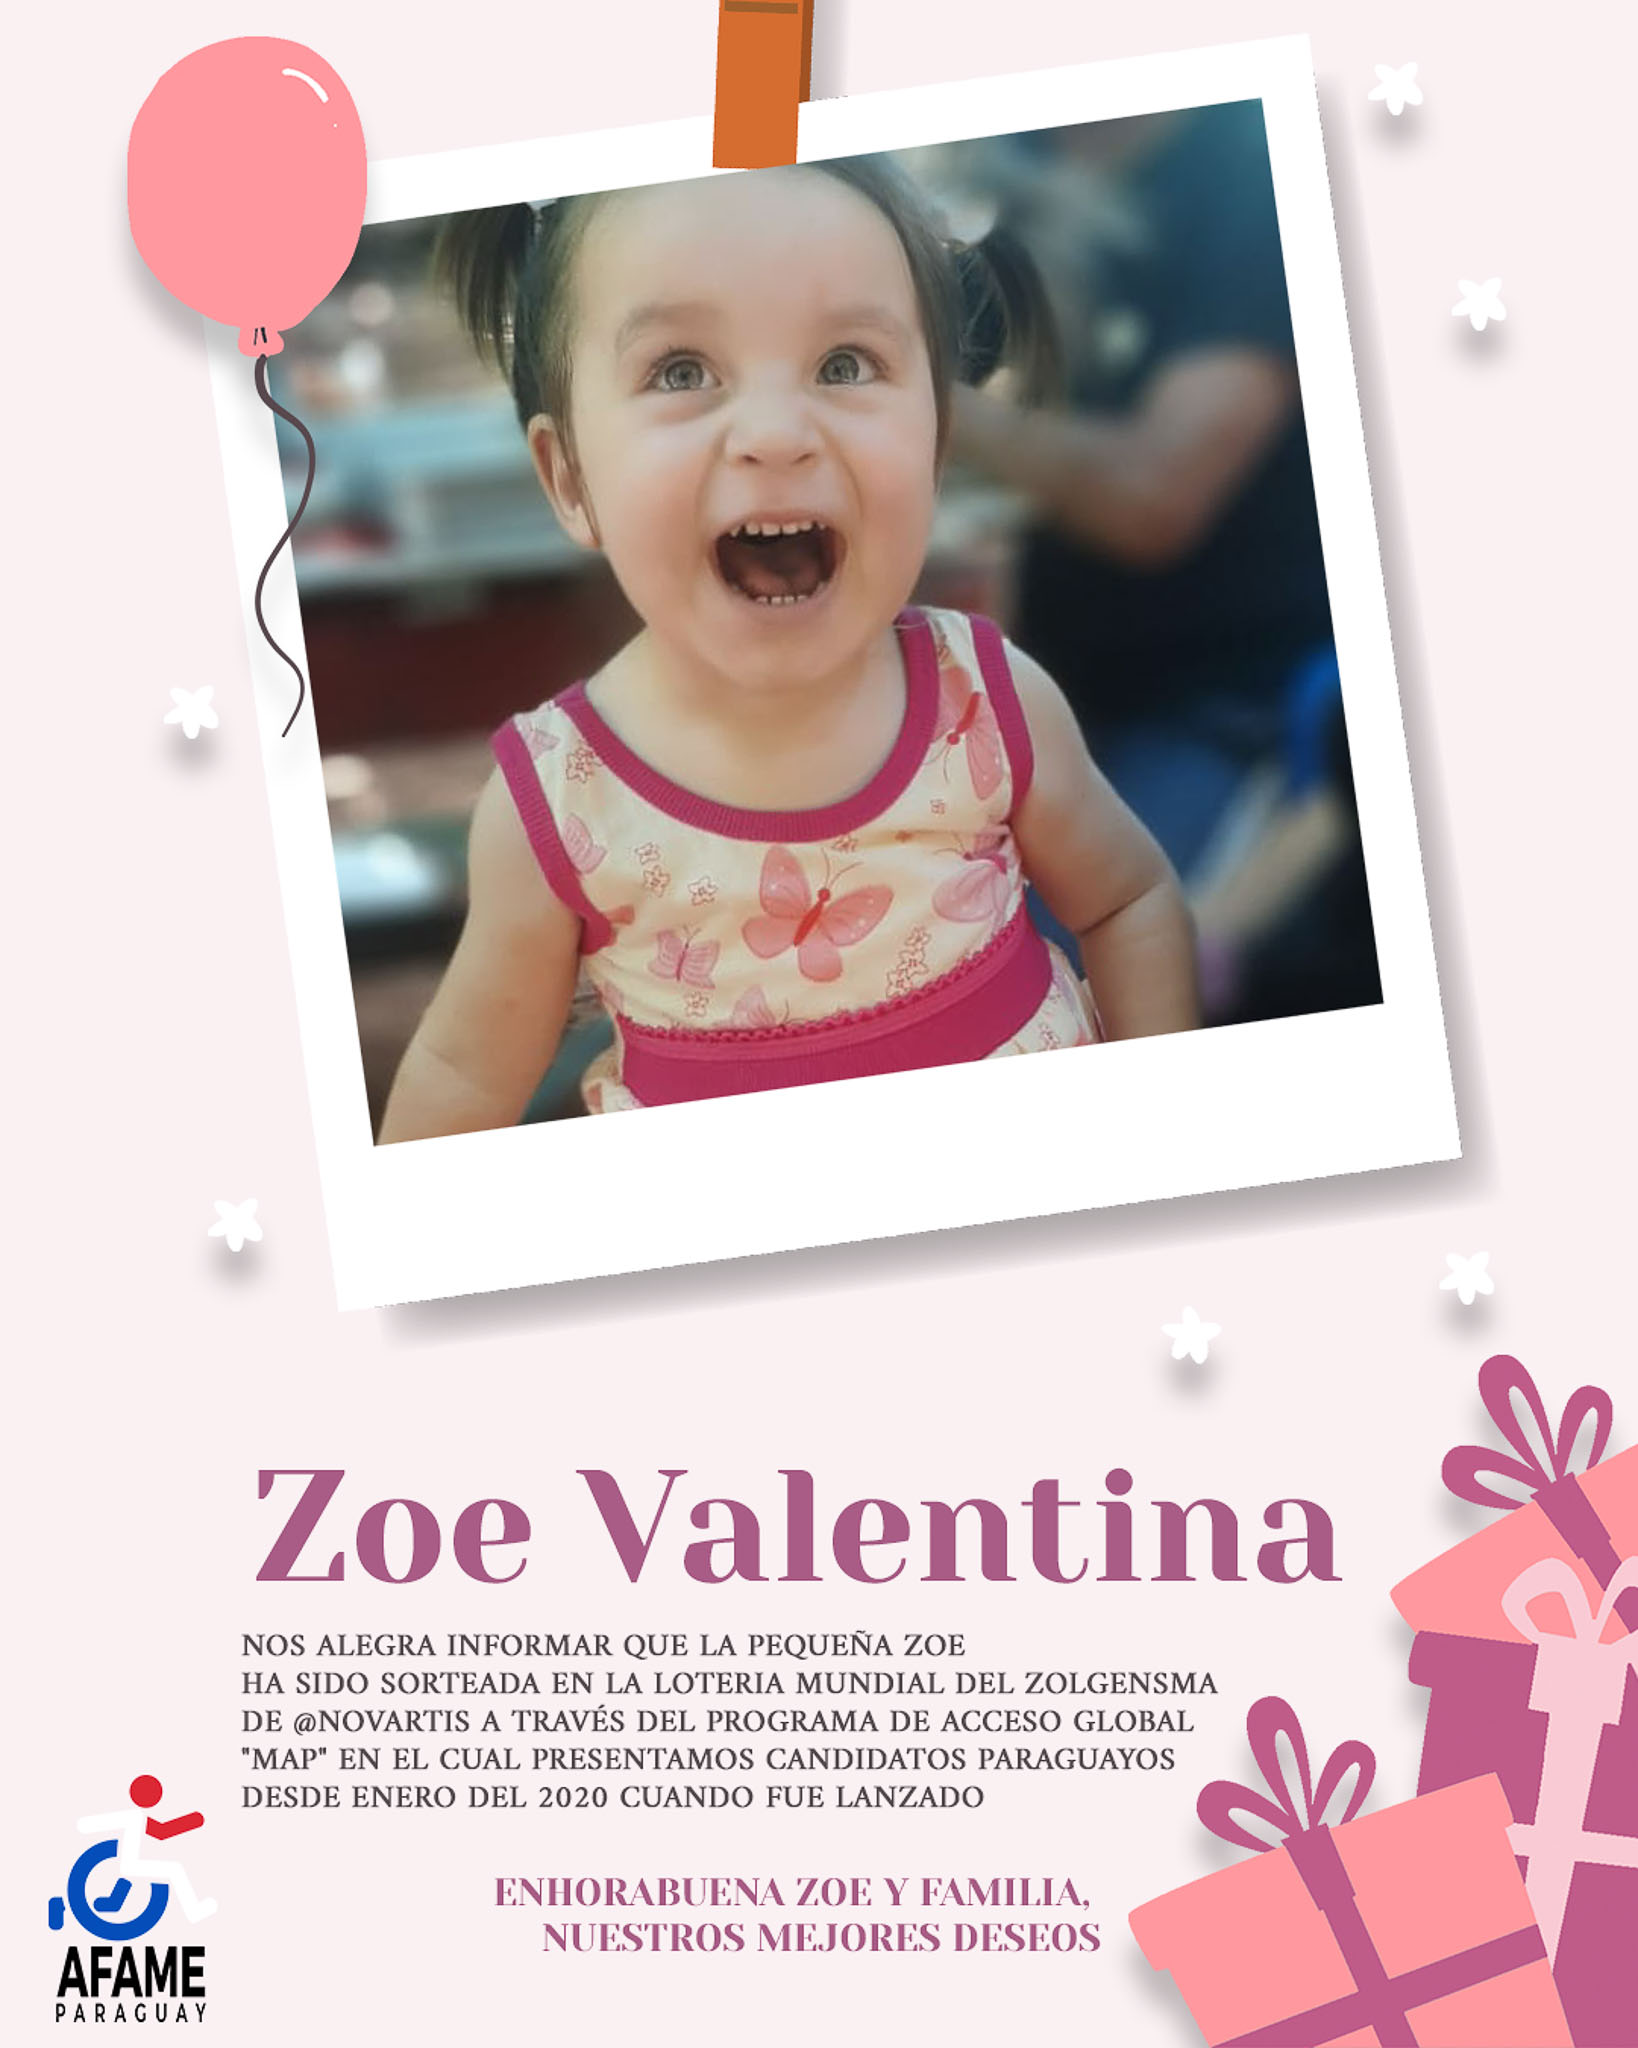 Zoe Valentina ganó sorteo mundial y recibirá el Zolgensma